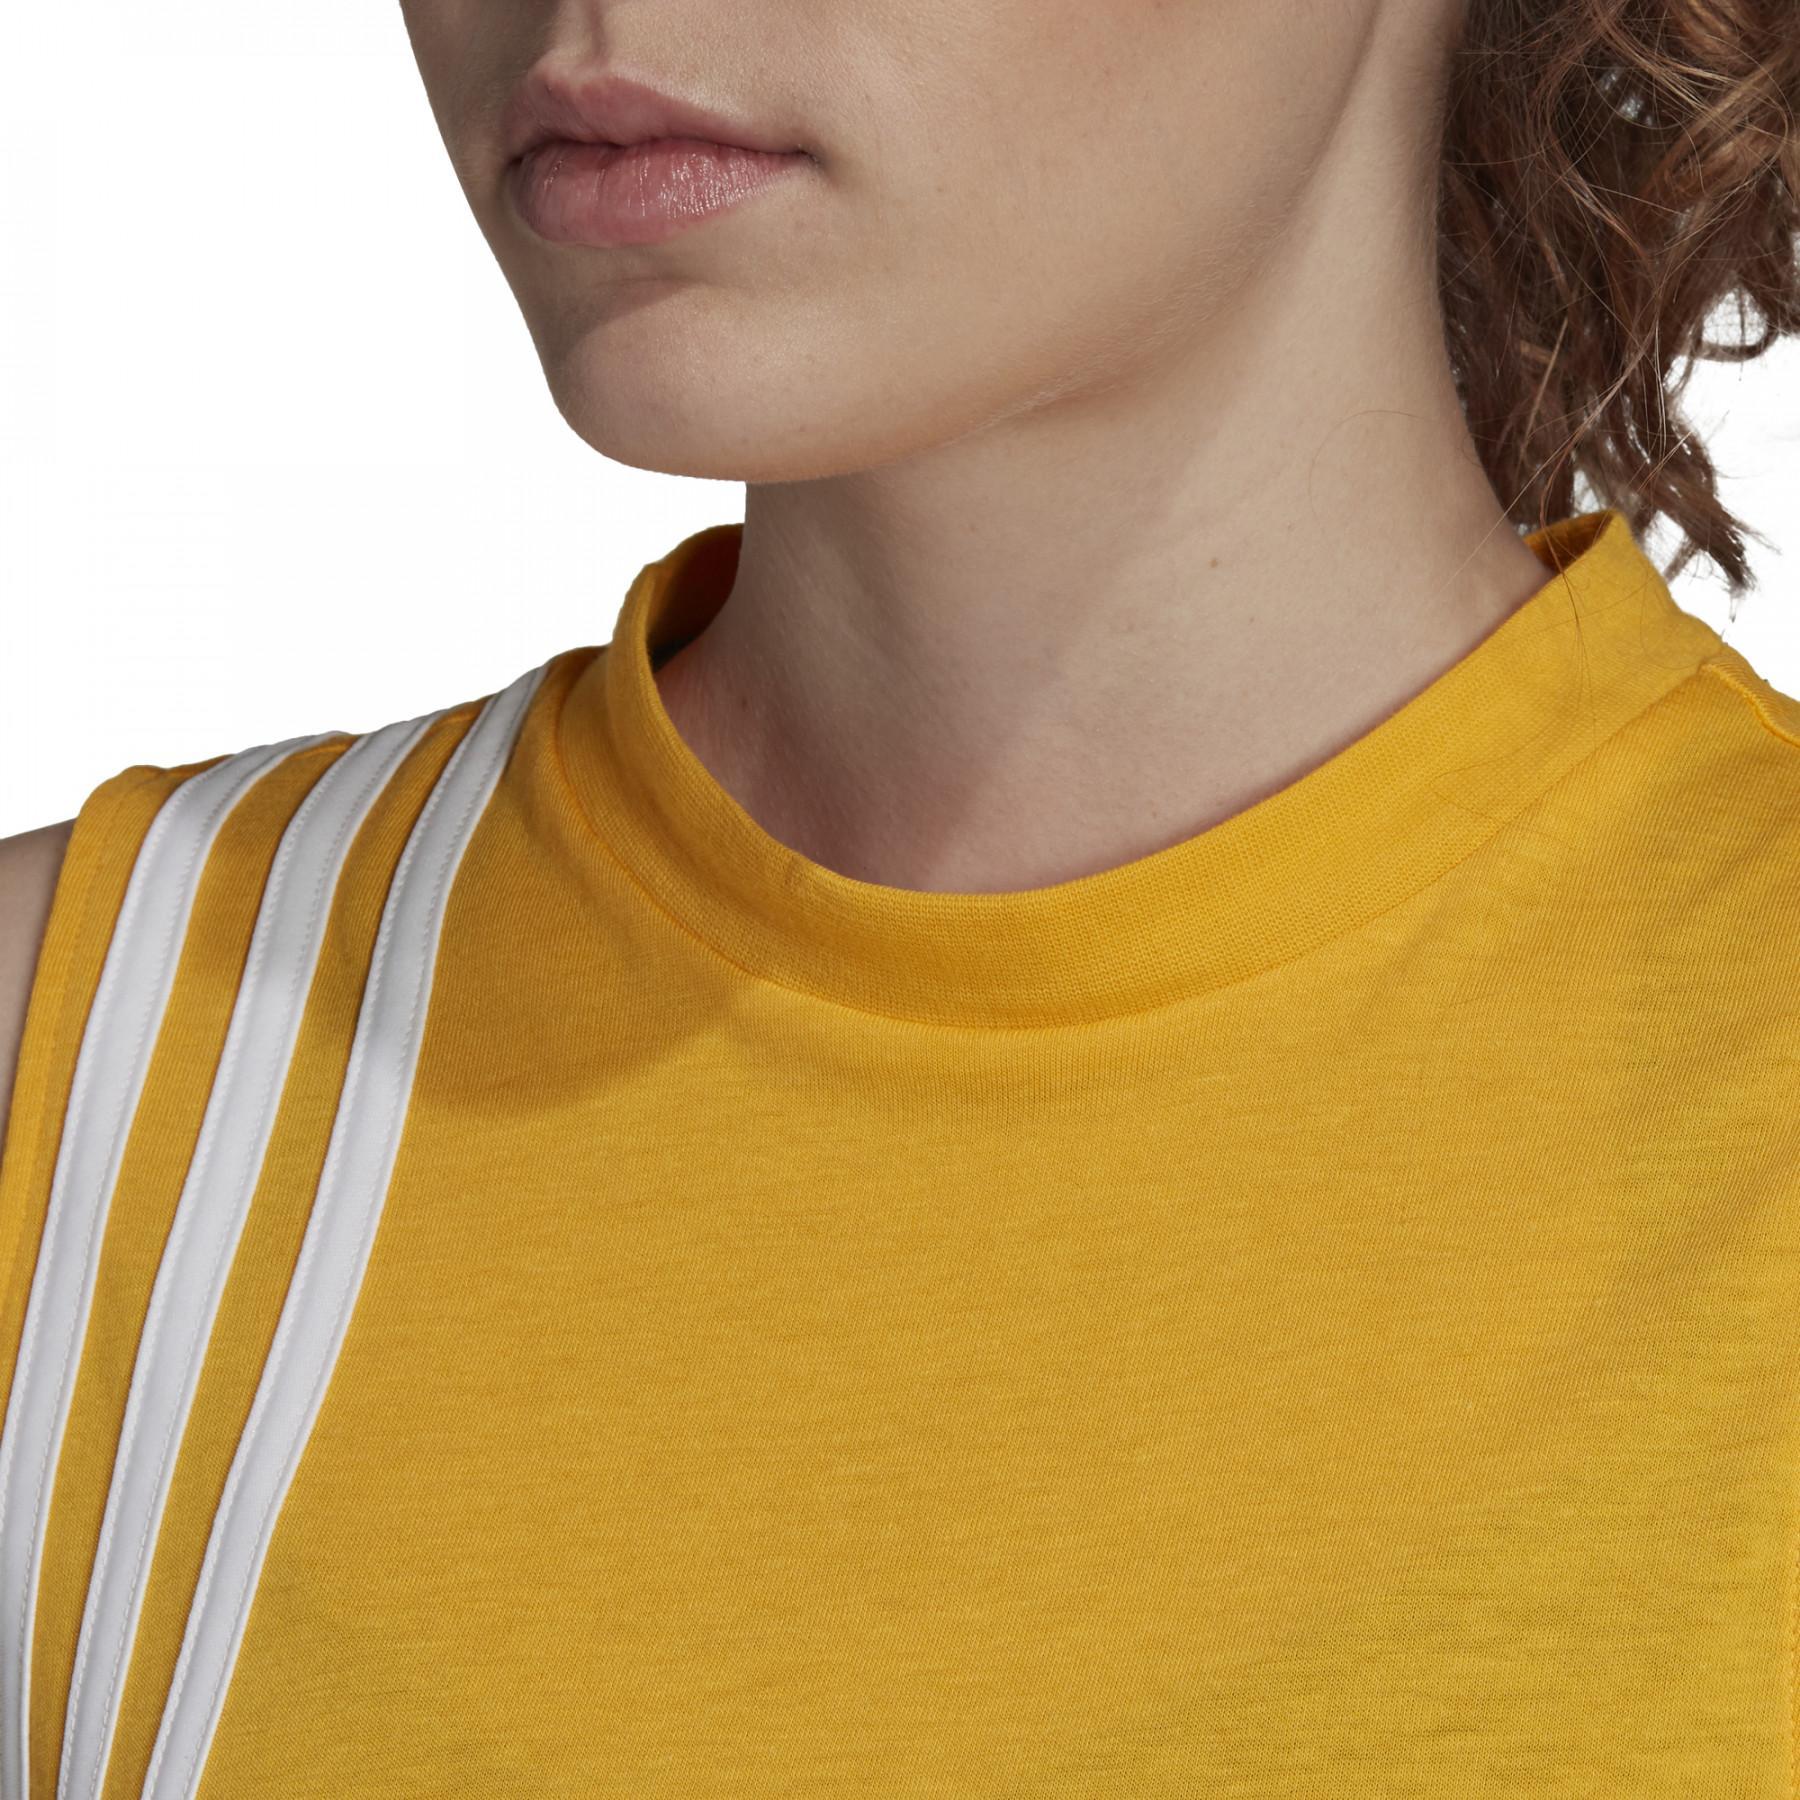 Camiseta de tirantes de entrenamiento para mujer adidas Must Haves 3-Stripes